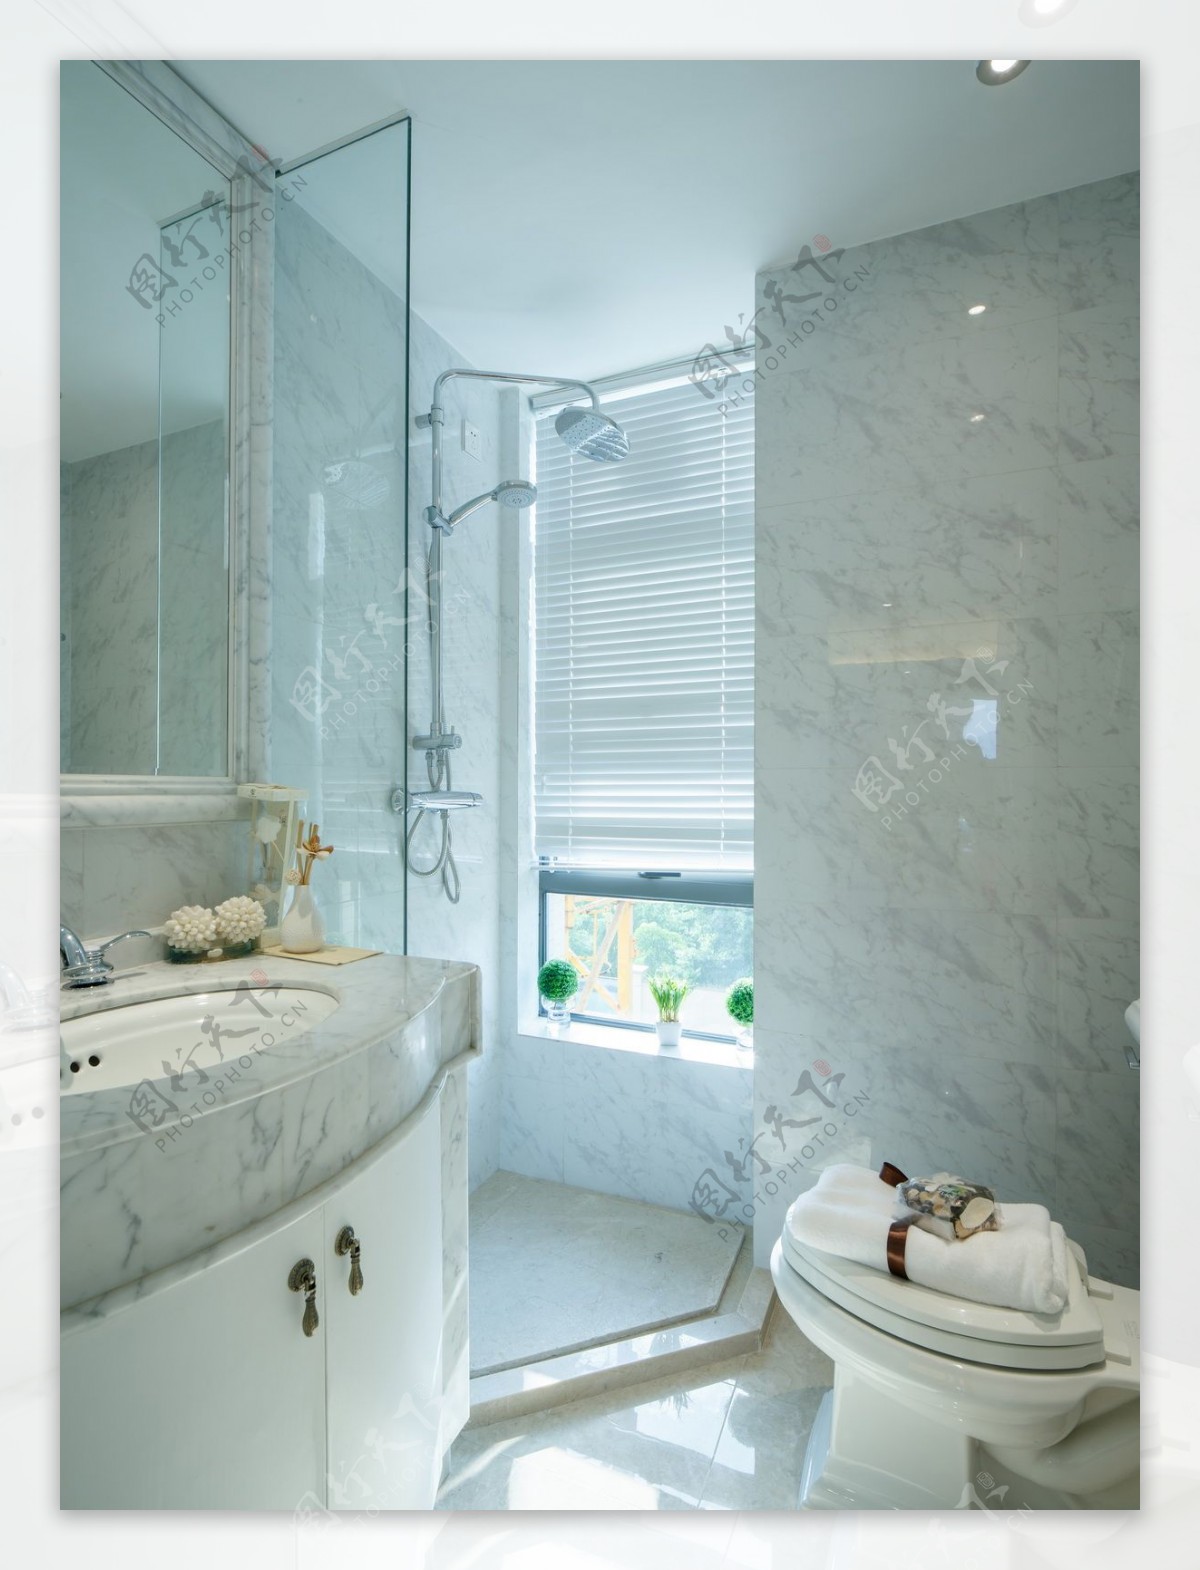 现代简约风室内设计浴室洗脸池白色调效果图